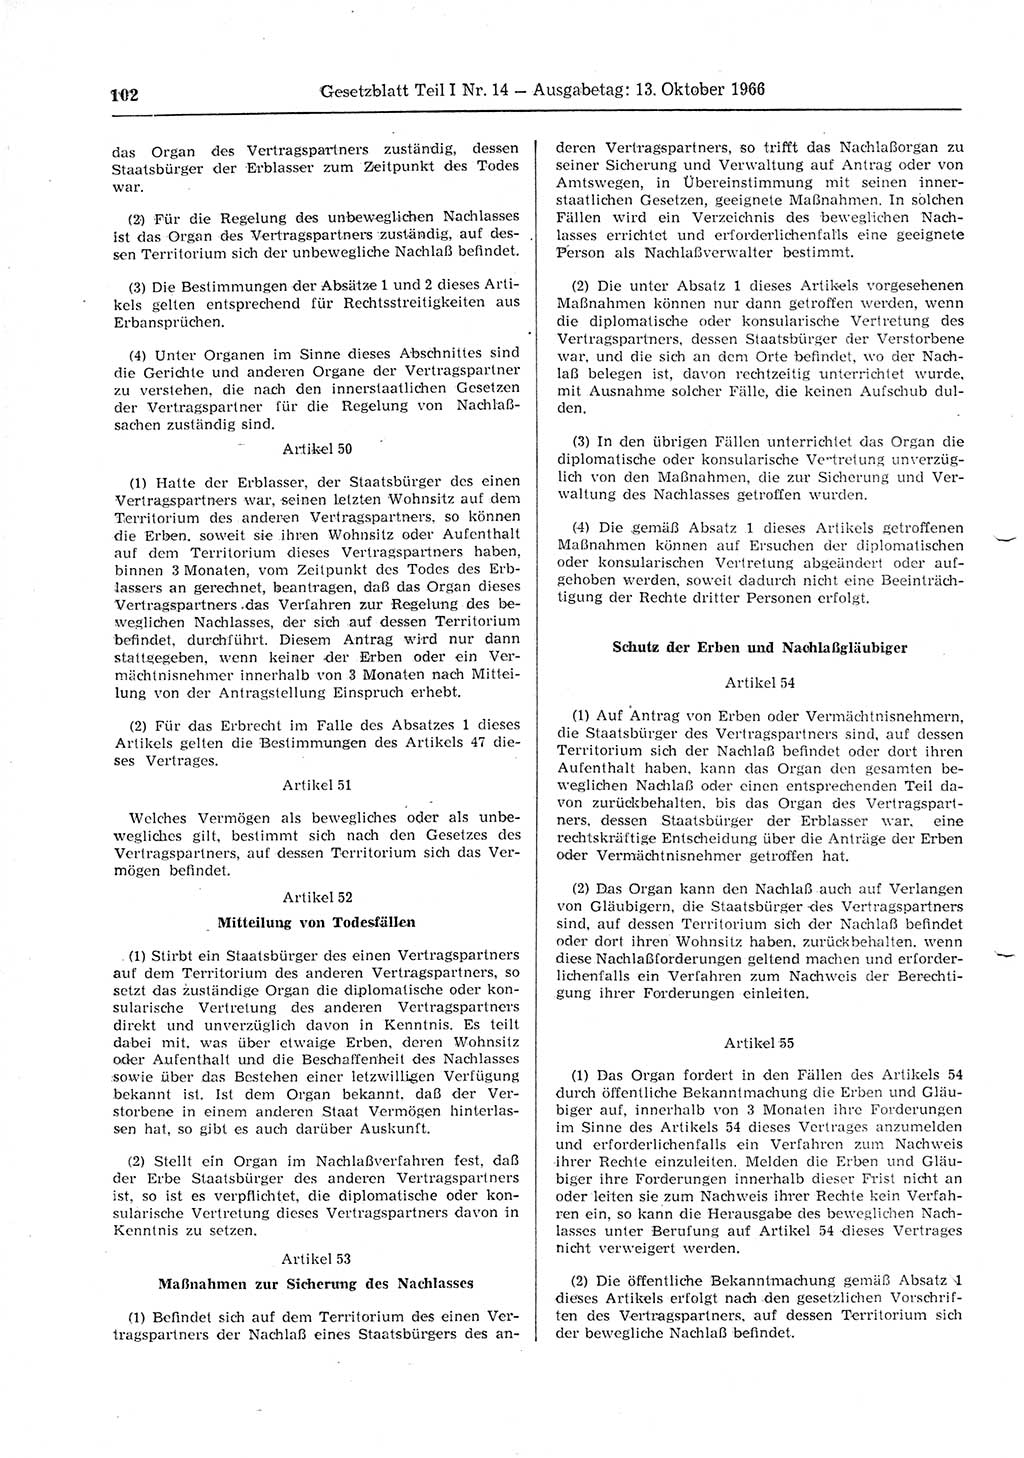 Gesetzblatt (GBl.) der Deutschen Demokratischen Republik (DDR) Teil Ⅰ 1966, Seite 102 (GBl. DDR Ⅰ 1966, S. 102)